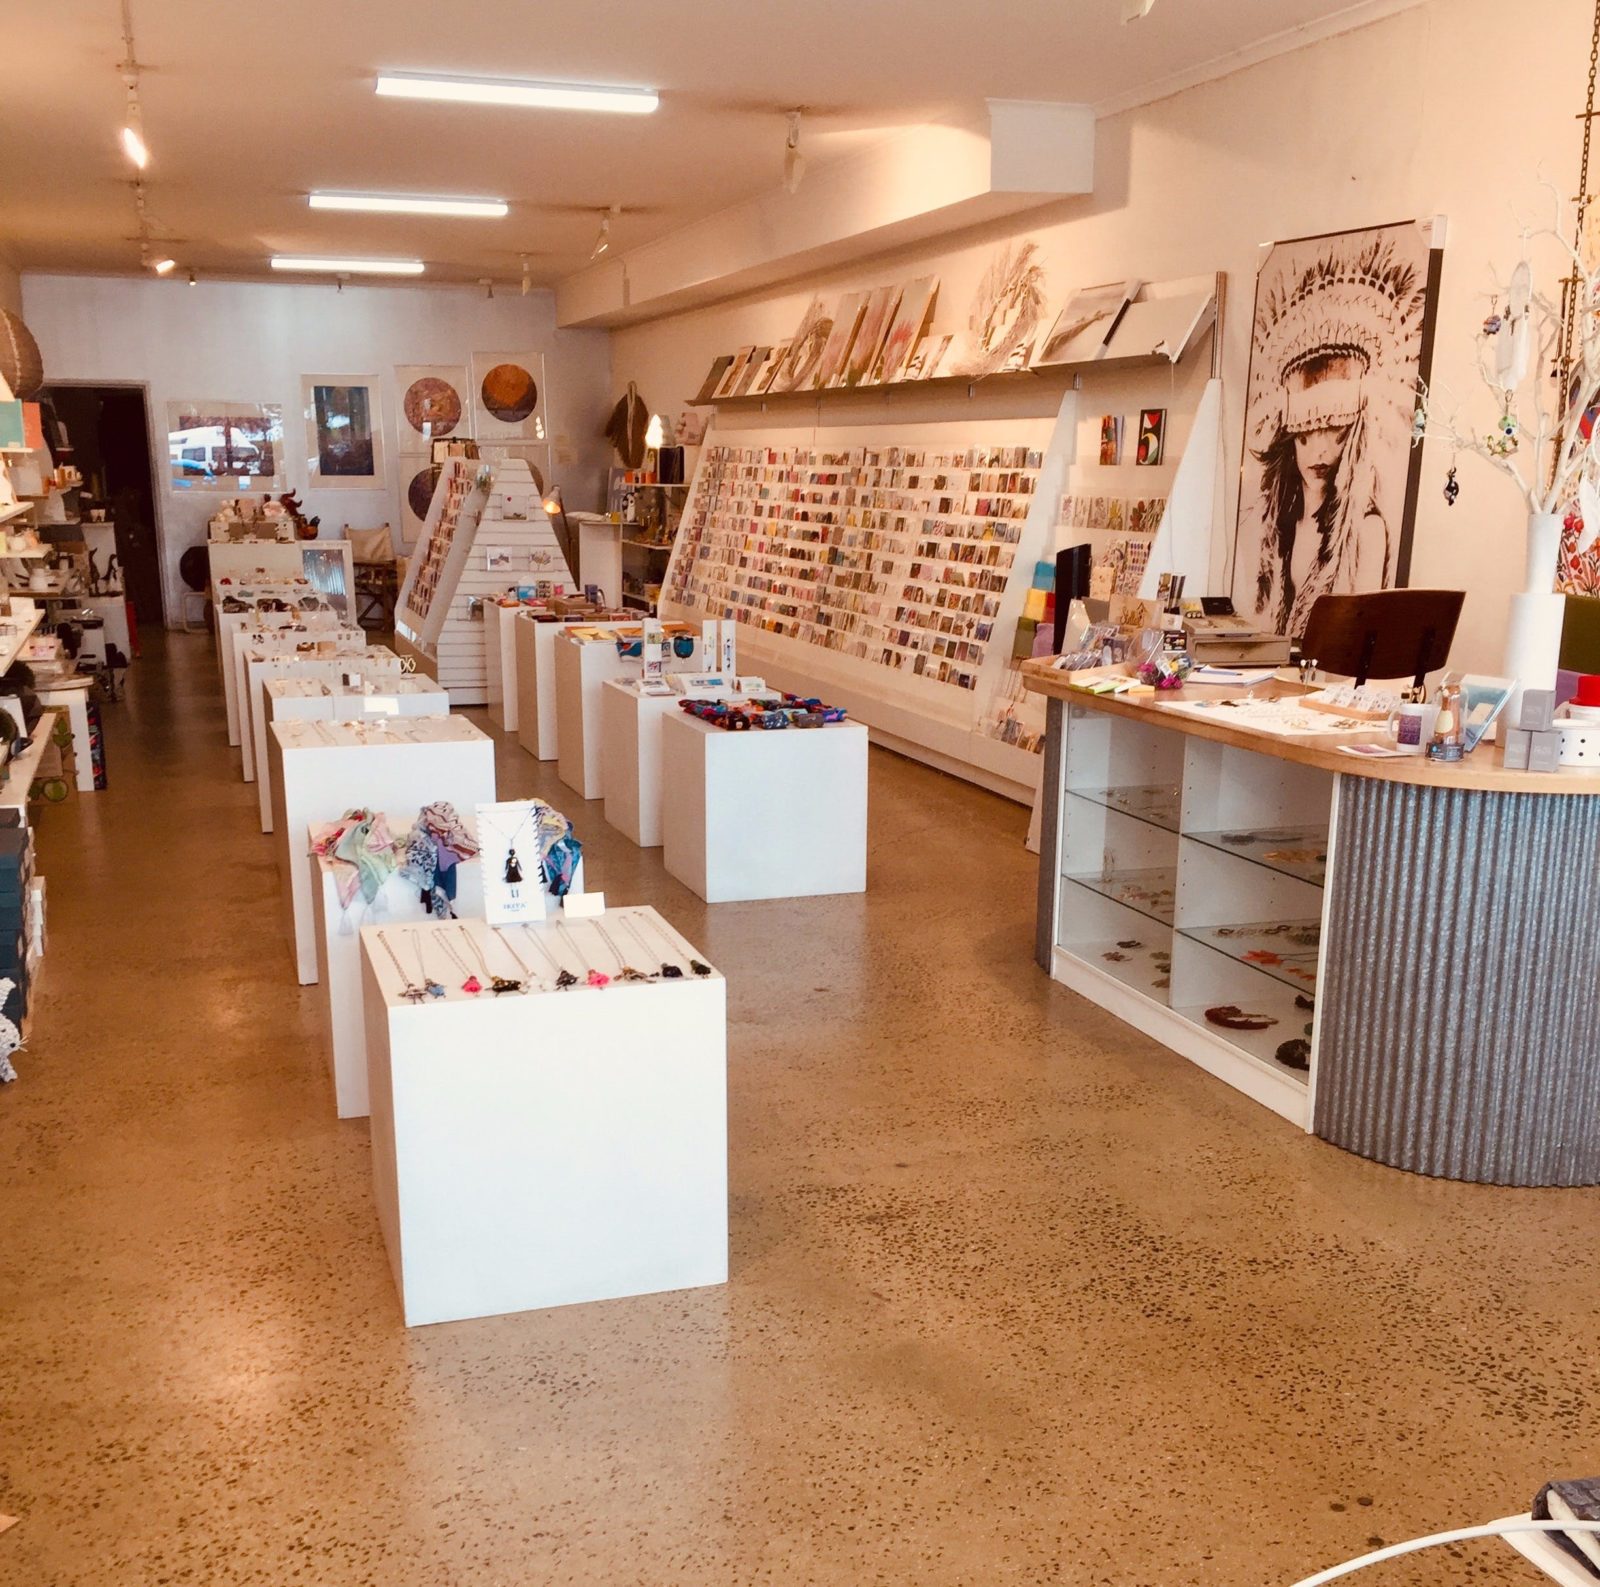 Gallery/Shop Interior